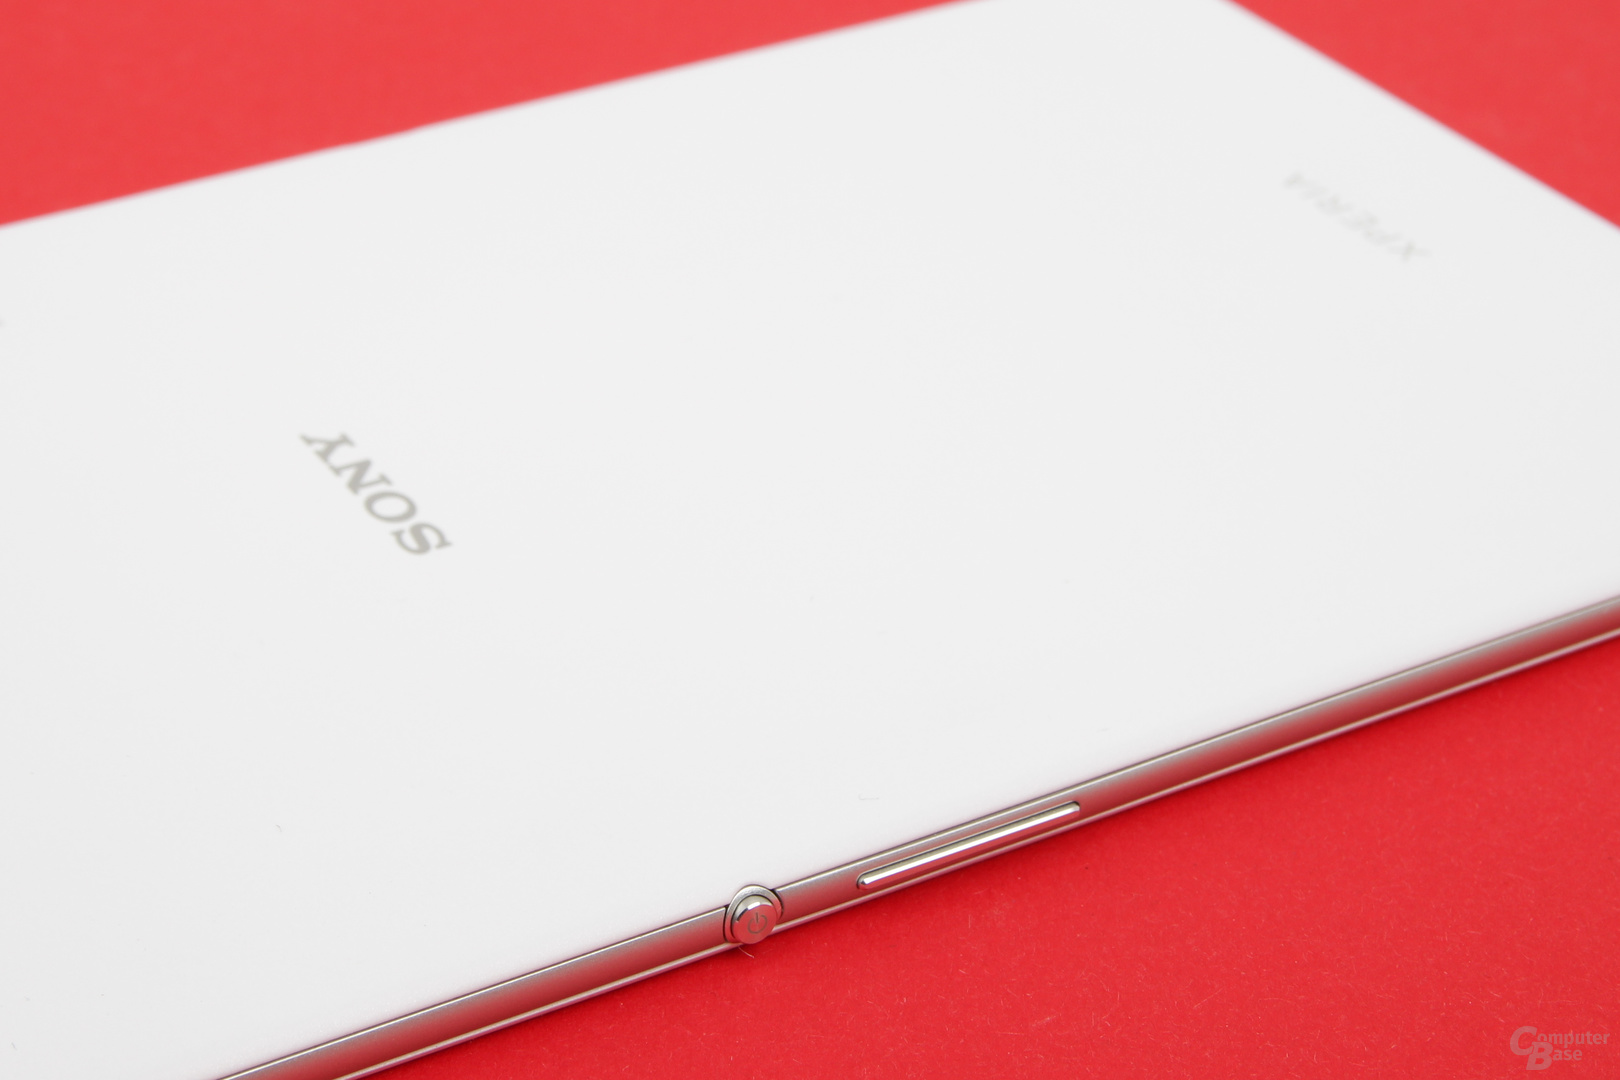 Das Sony Xperia Z3 Tablet Compact ist sehr dünn und gut verarbeitet